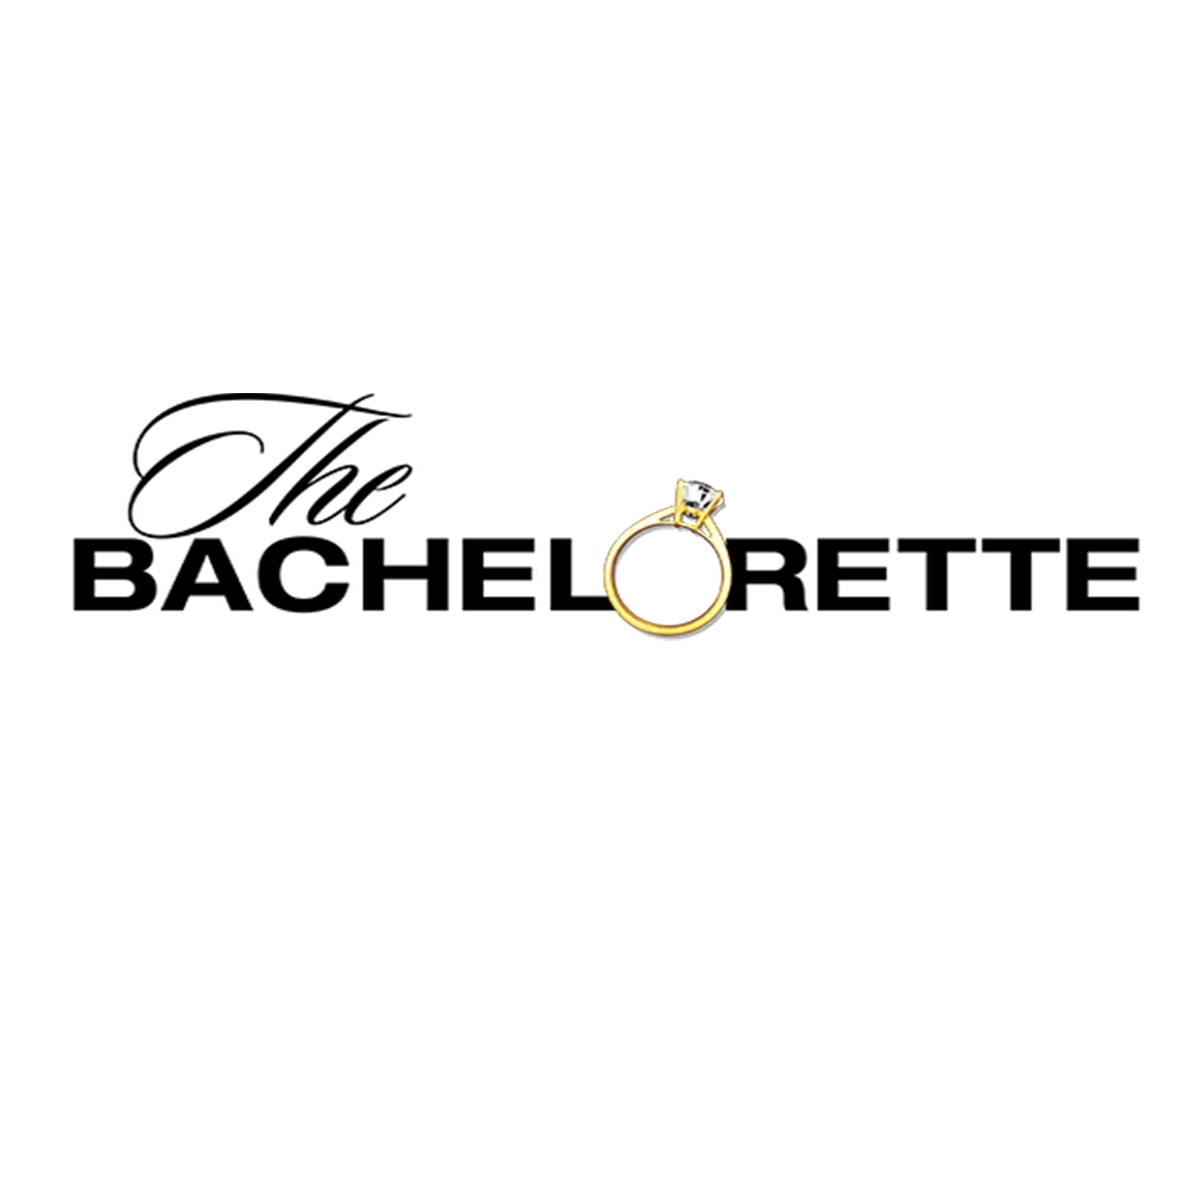 The Bachelorette, Logo